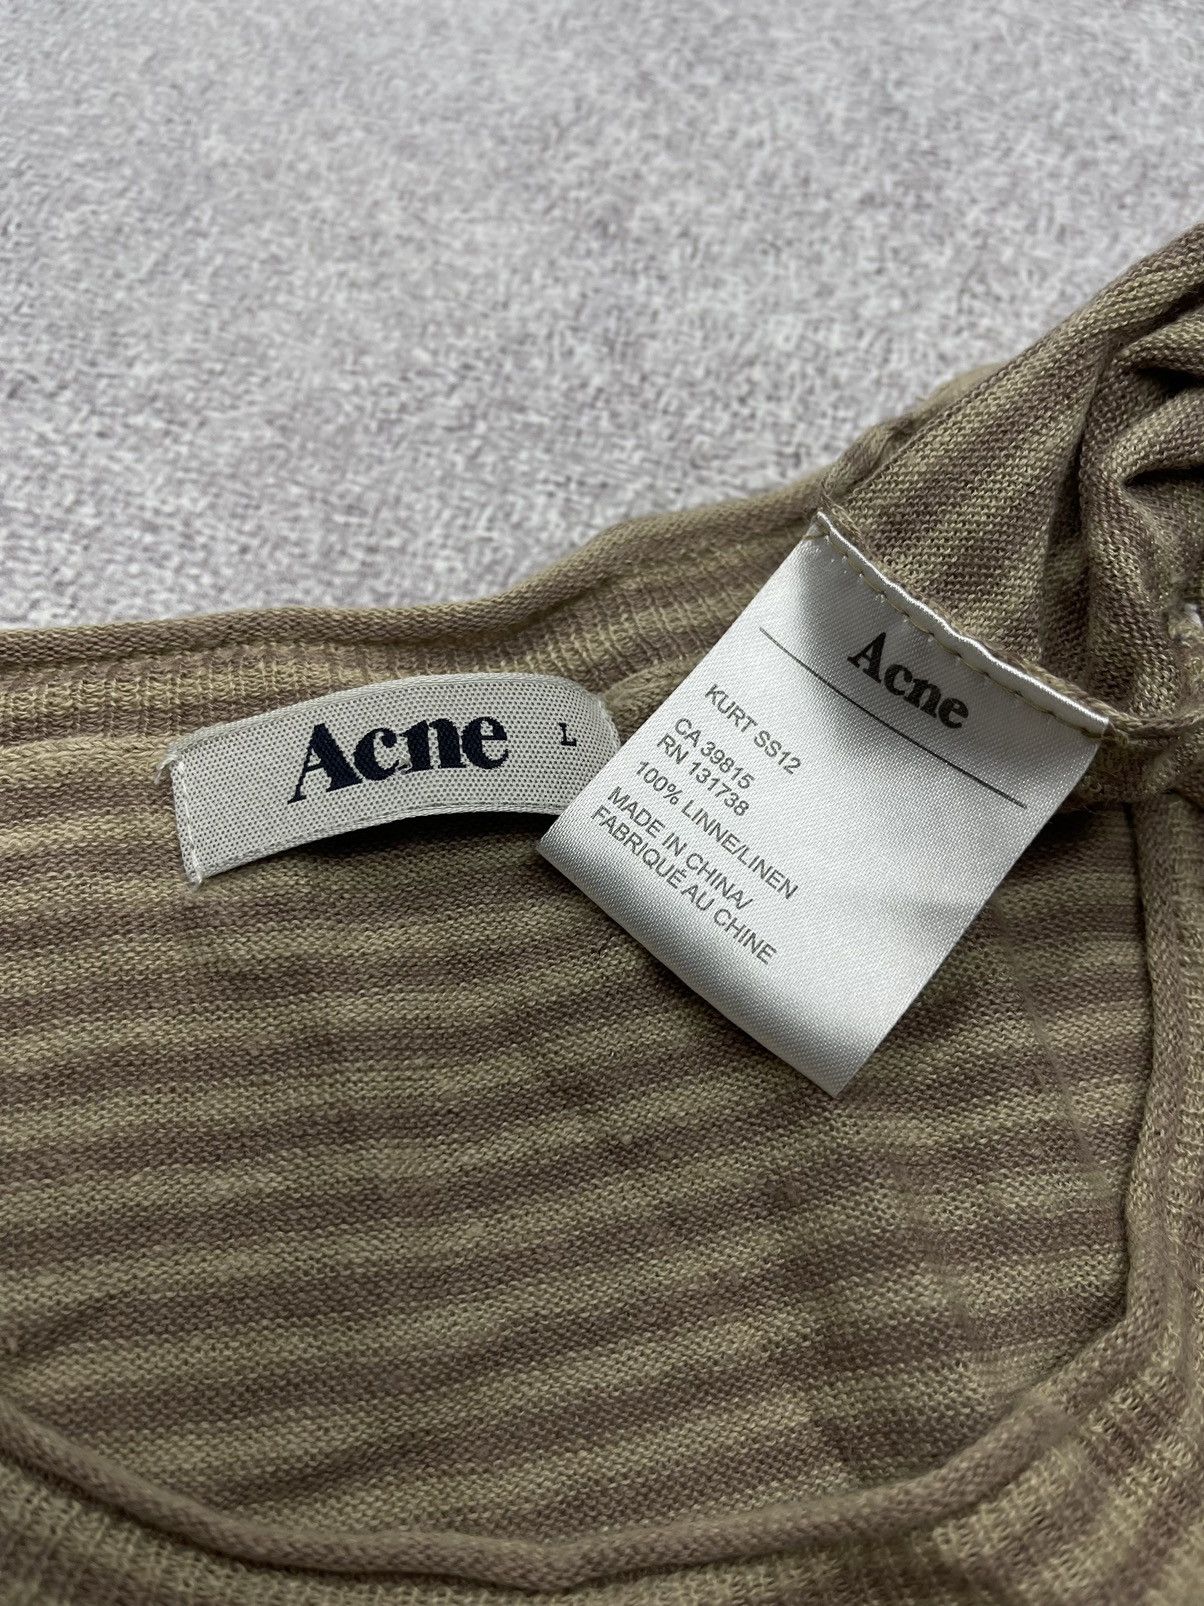 Acne Studios Vintage Acne Kurt Cobain Linen Sweater Rare Retro Y2K Size US L / EU 52-54 / 3 - 6 Preview